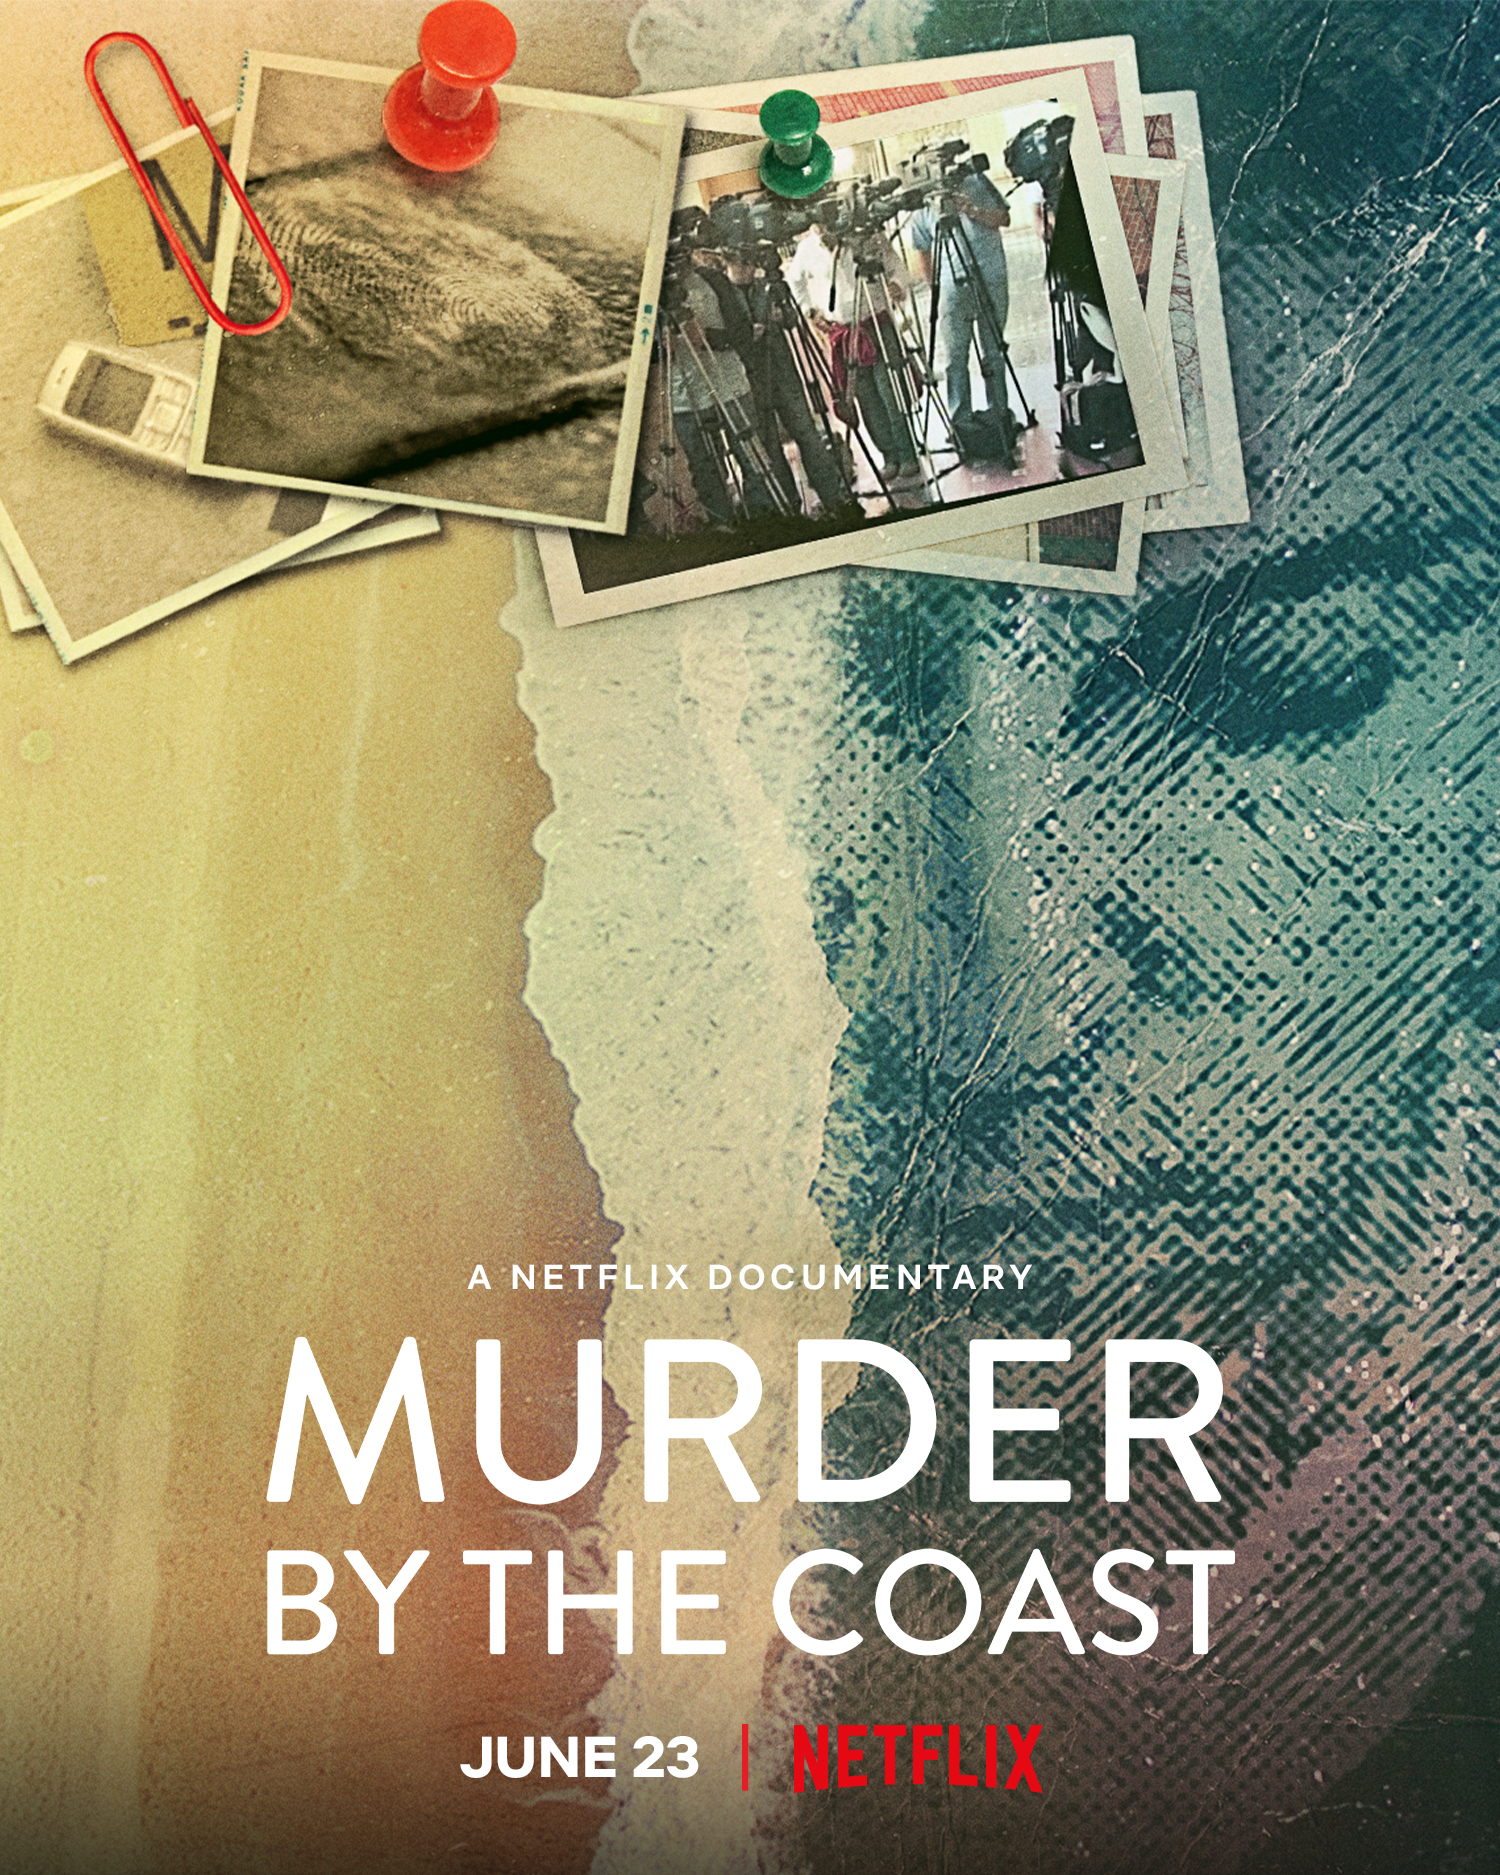 ดูหนังออนไลน์ Murder by the Coast | Netflix (2021) ฆาตกรรม ณ เมืองชายฝั่ง